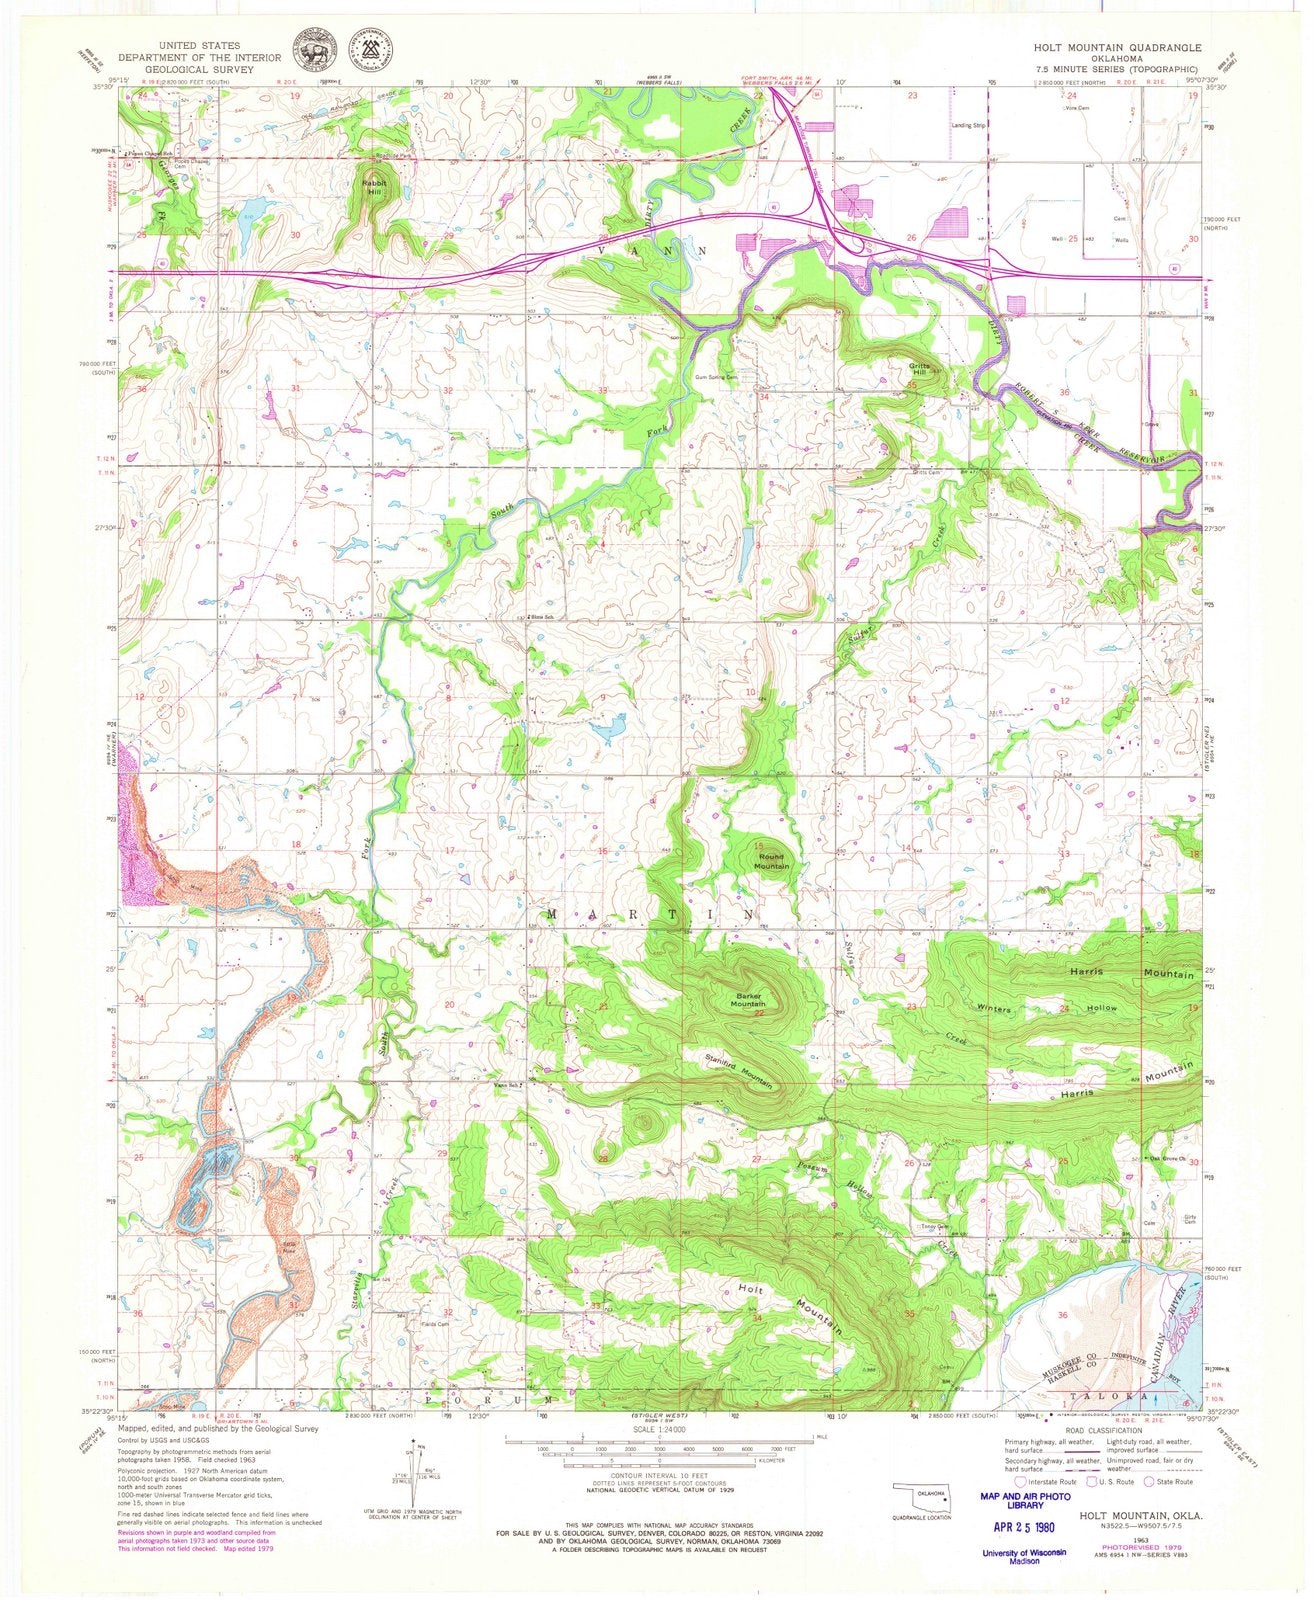 1963 Holt Mountain, OK - Oklahoma - USGS Topographic Map